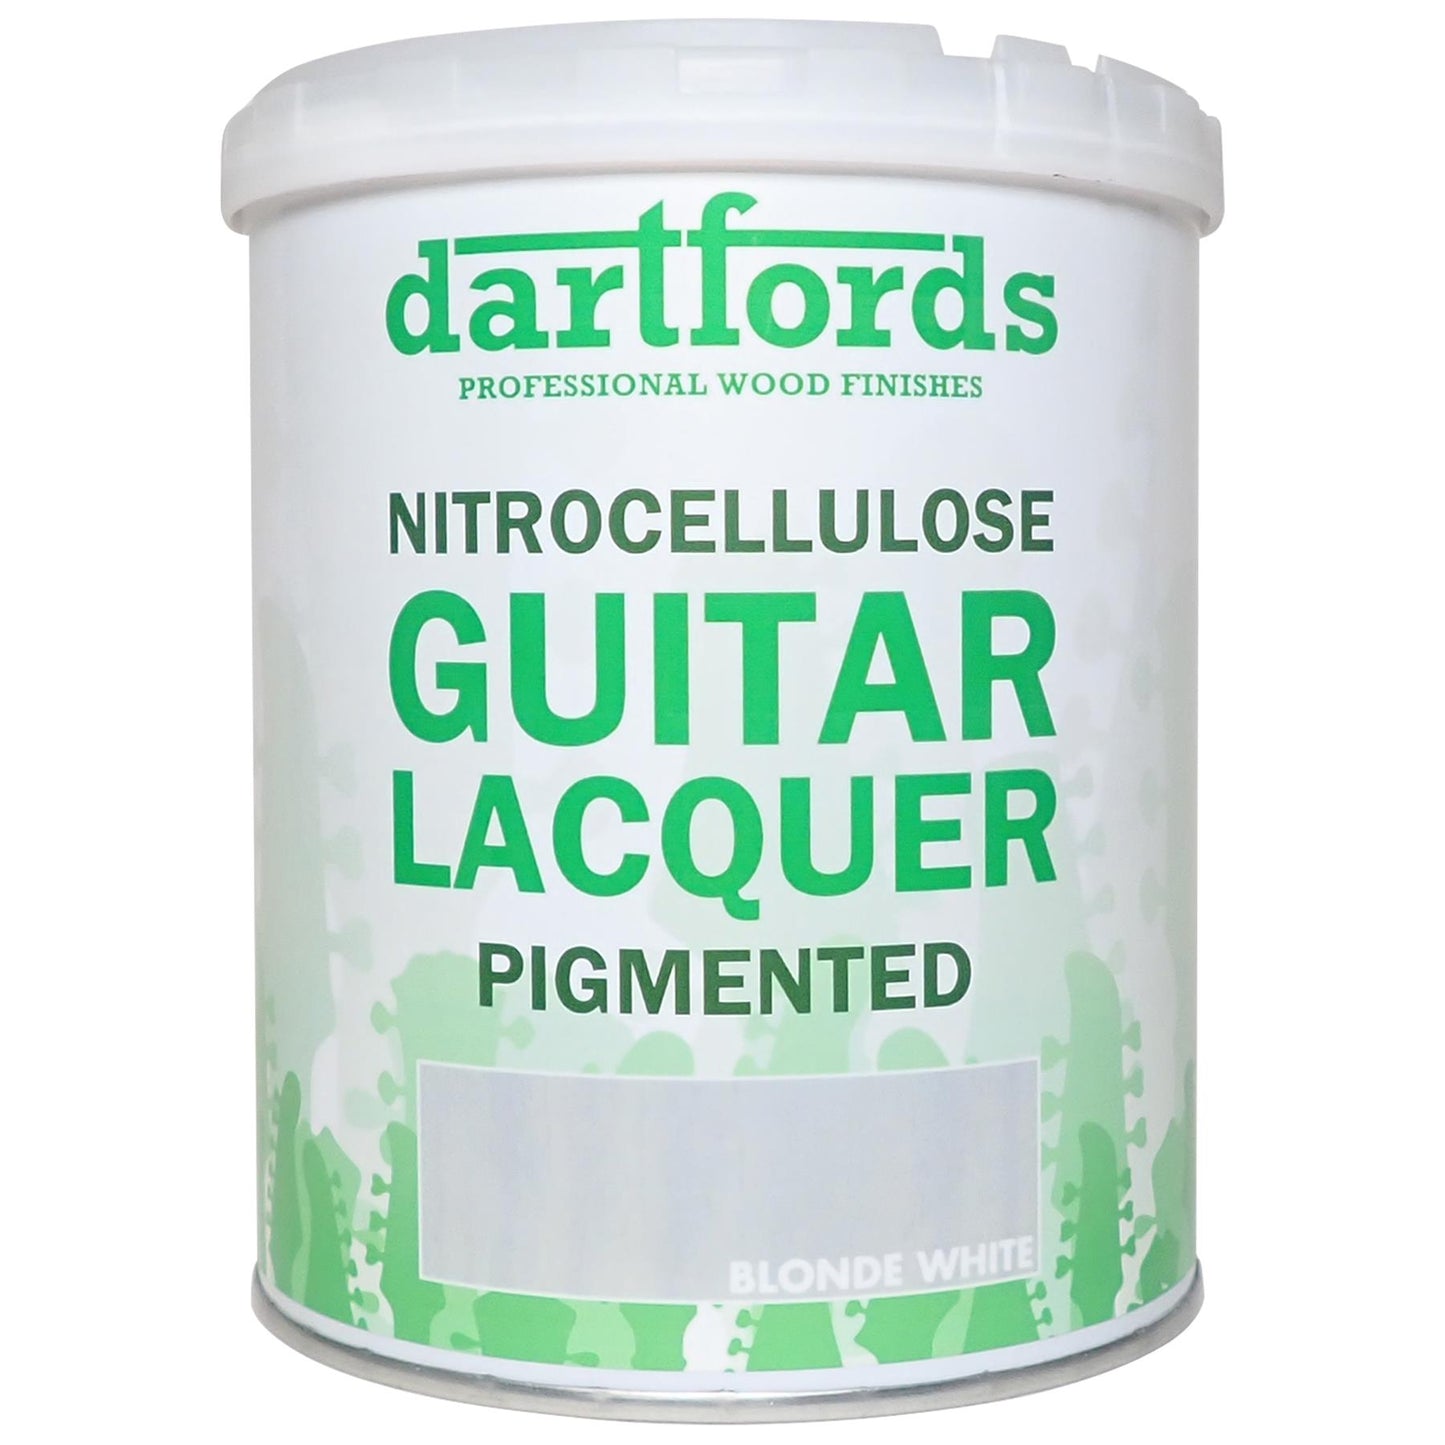 dartfords Blonde White Pigmented Nitrocellulose Guitar Lacquer - 1 litre Tin